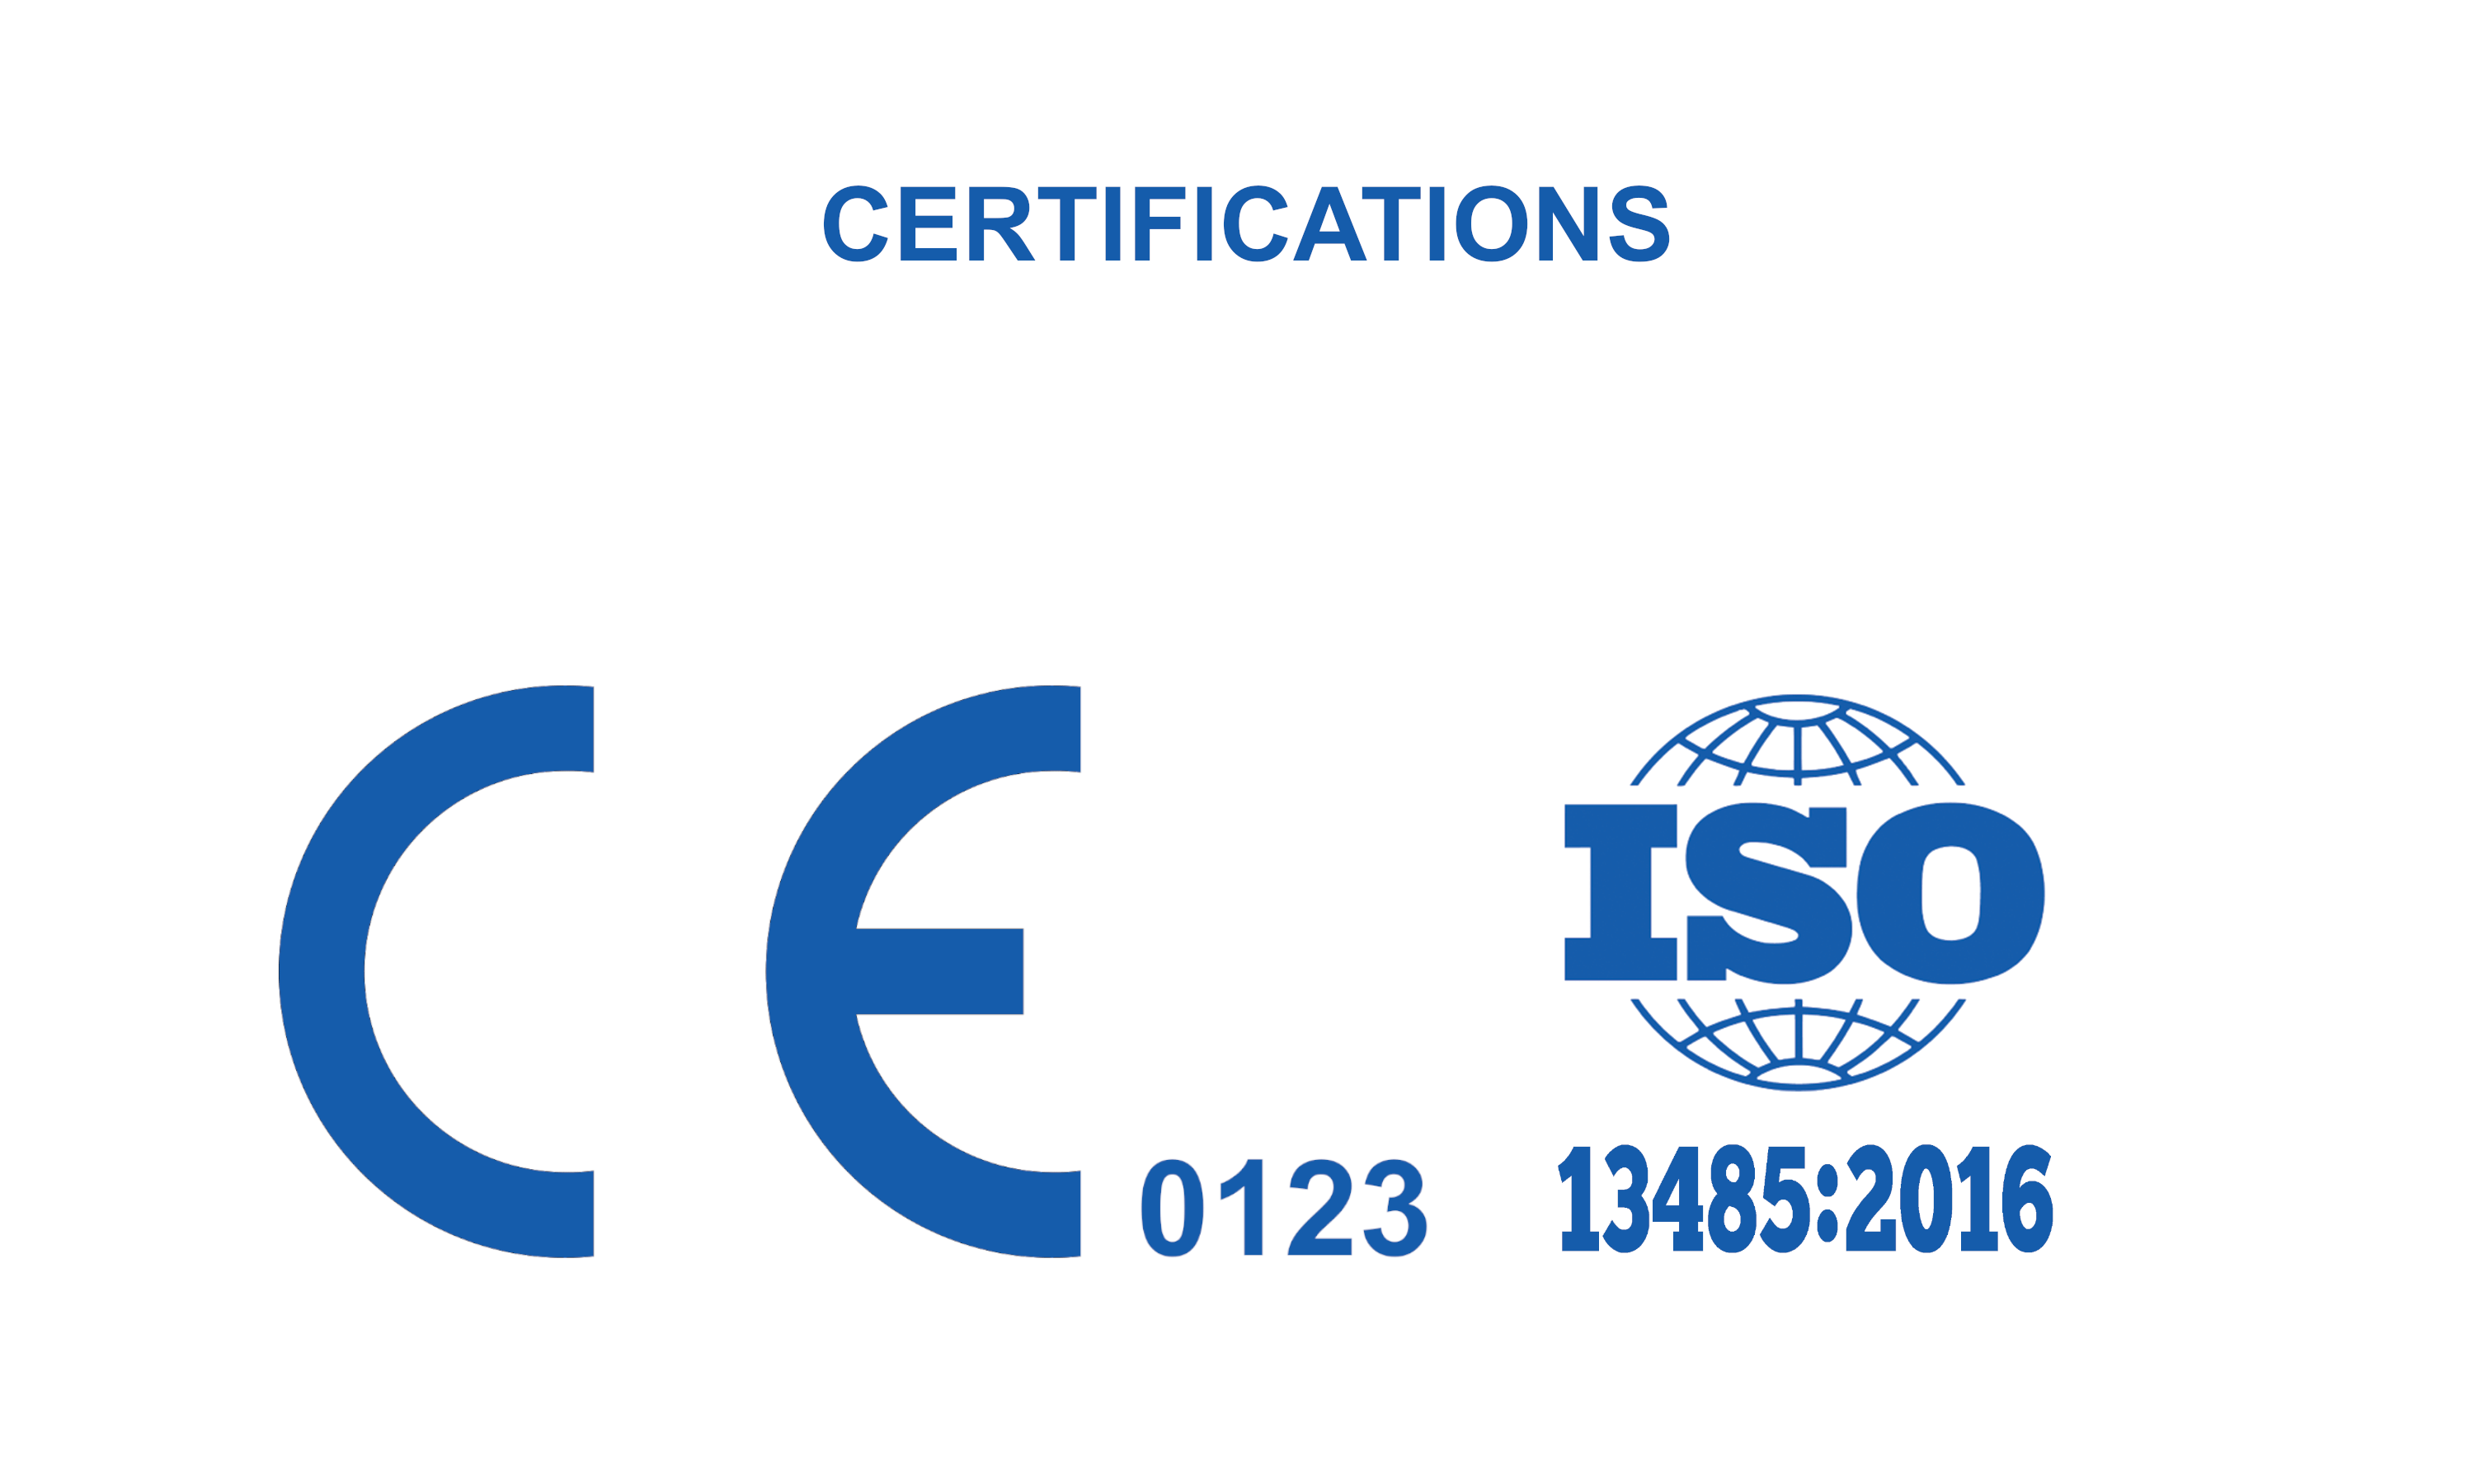 ECG 100 - Certifications